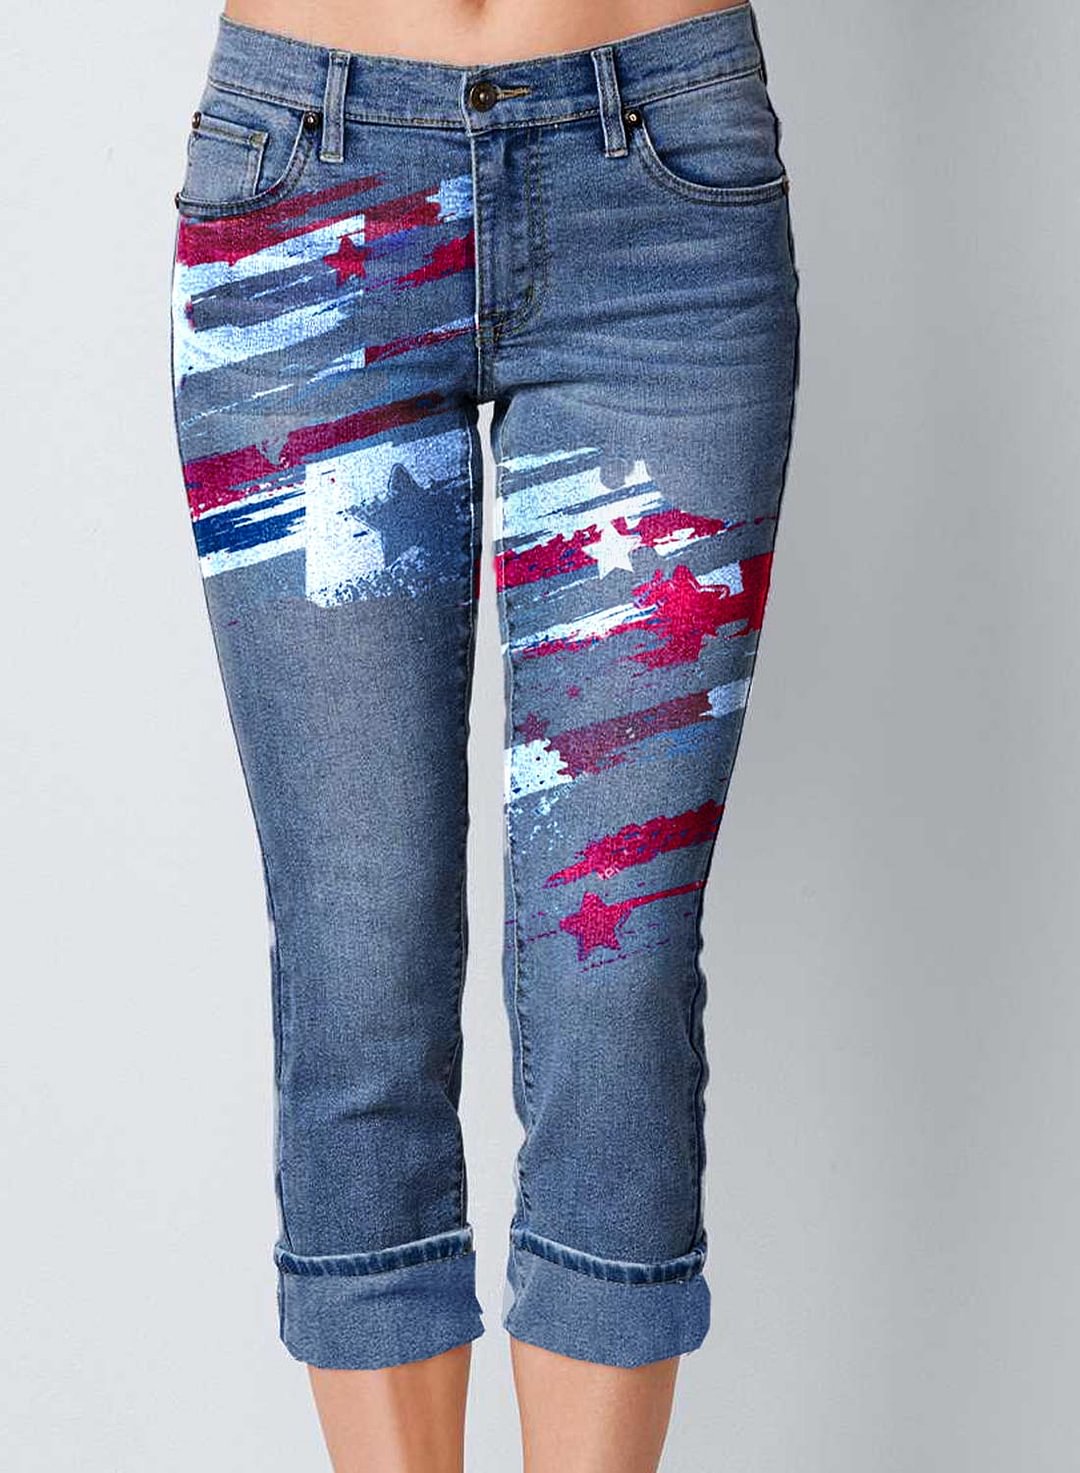 Women's Jeans Flag Print Mid Waist Capris Jeans